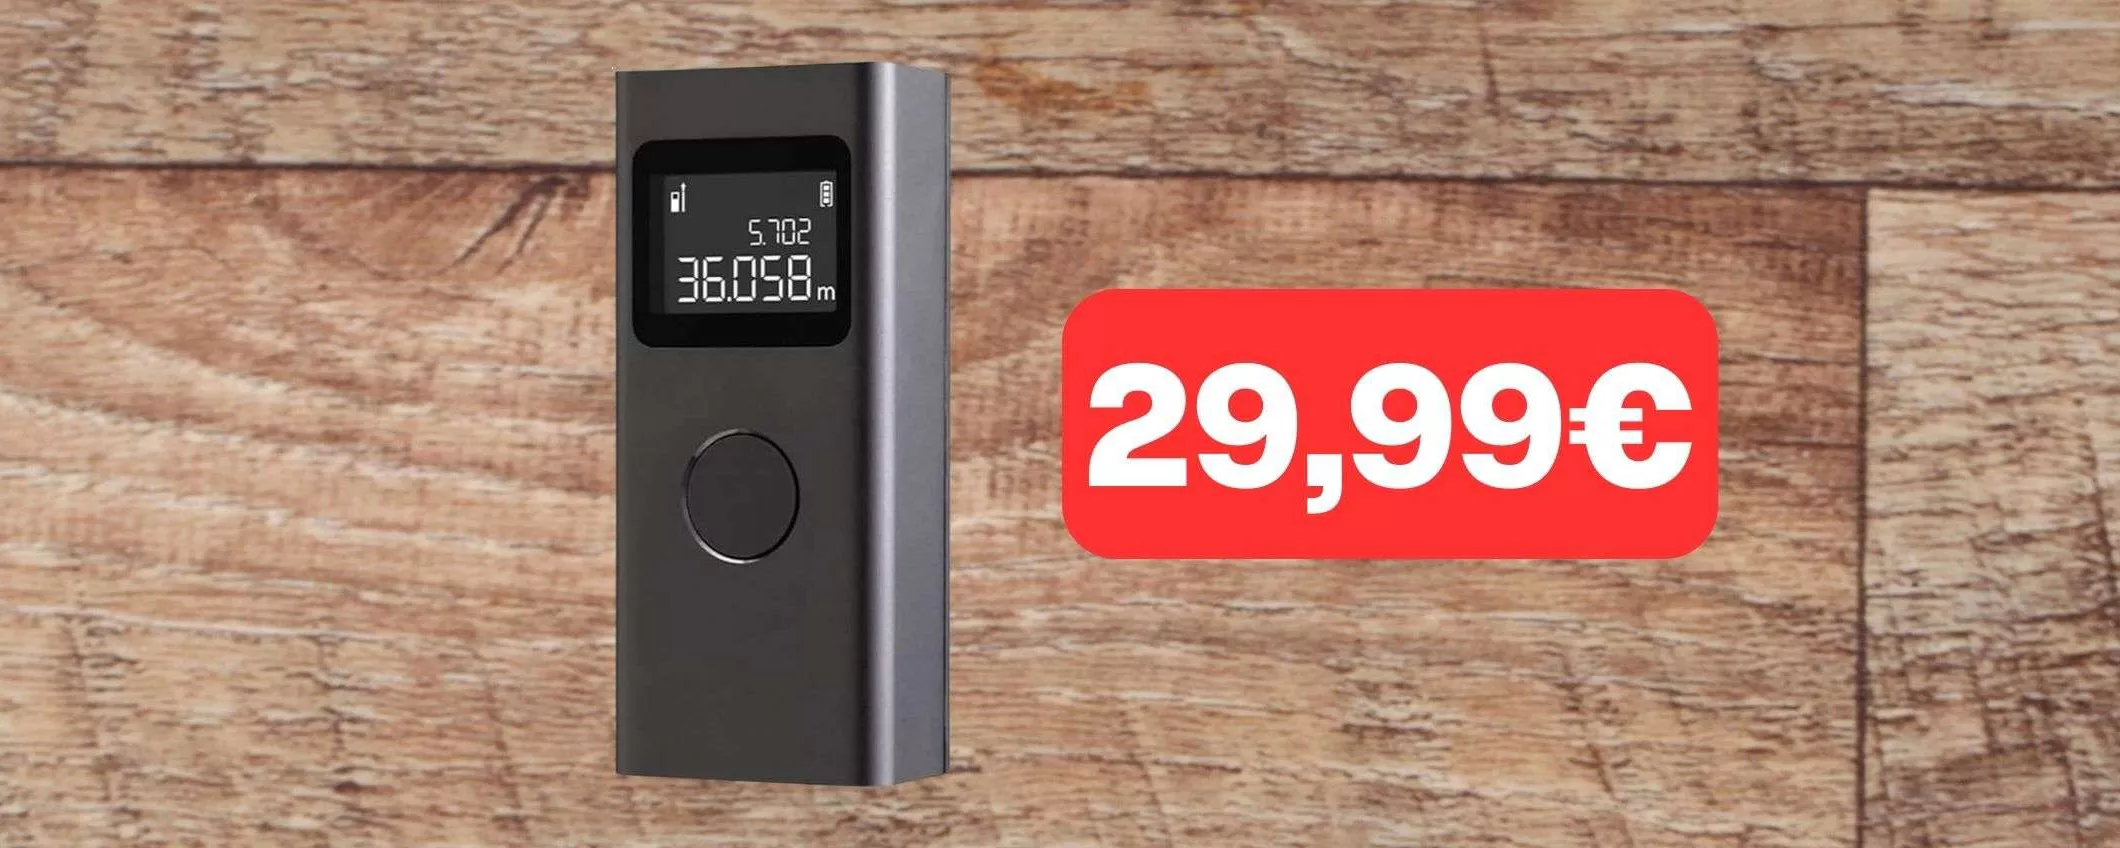 Misuratore Laser Xiaomi a PREZZO STRACCIATO: solo 29,99€ su Amazon